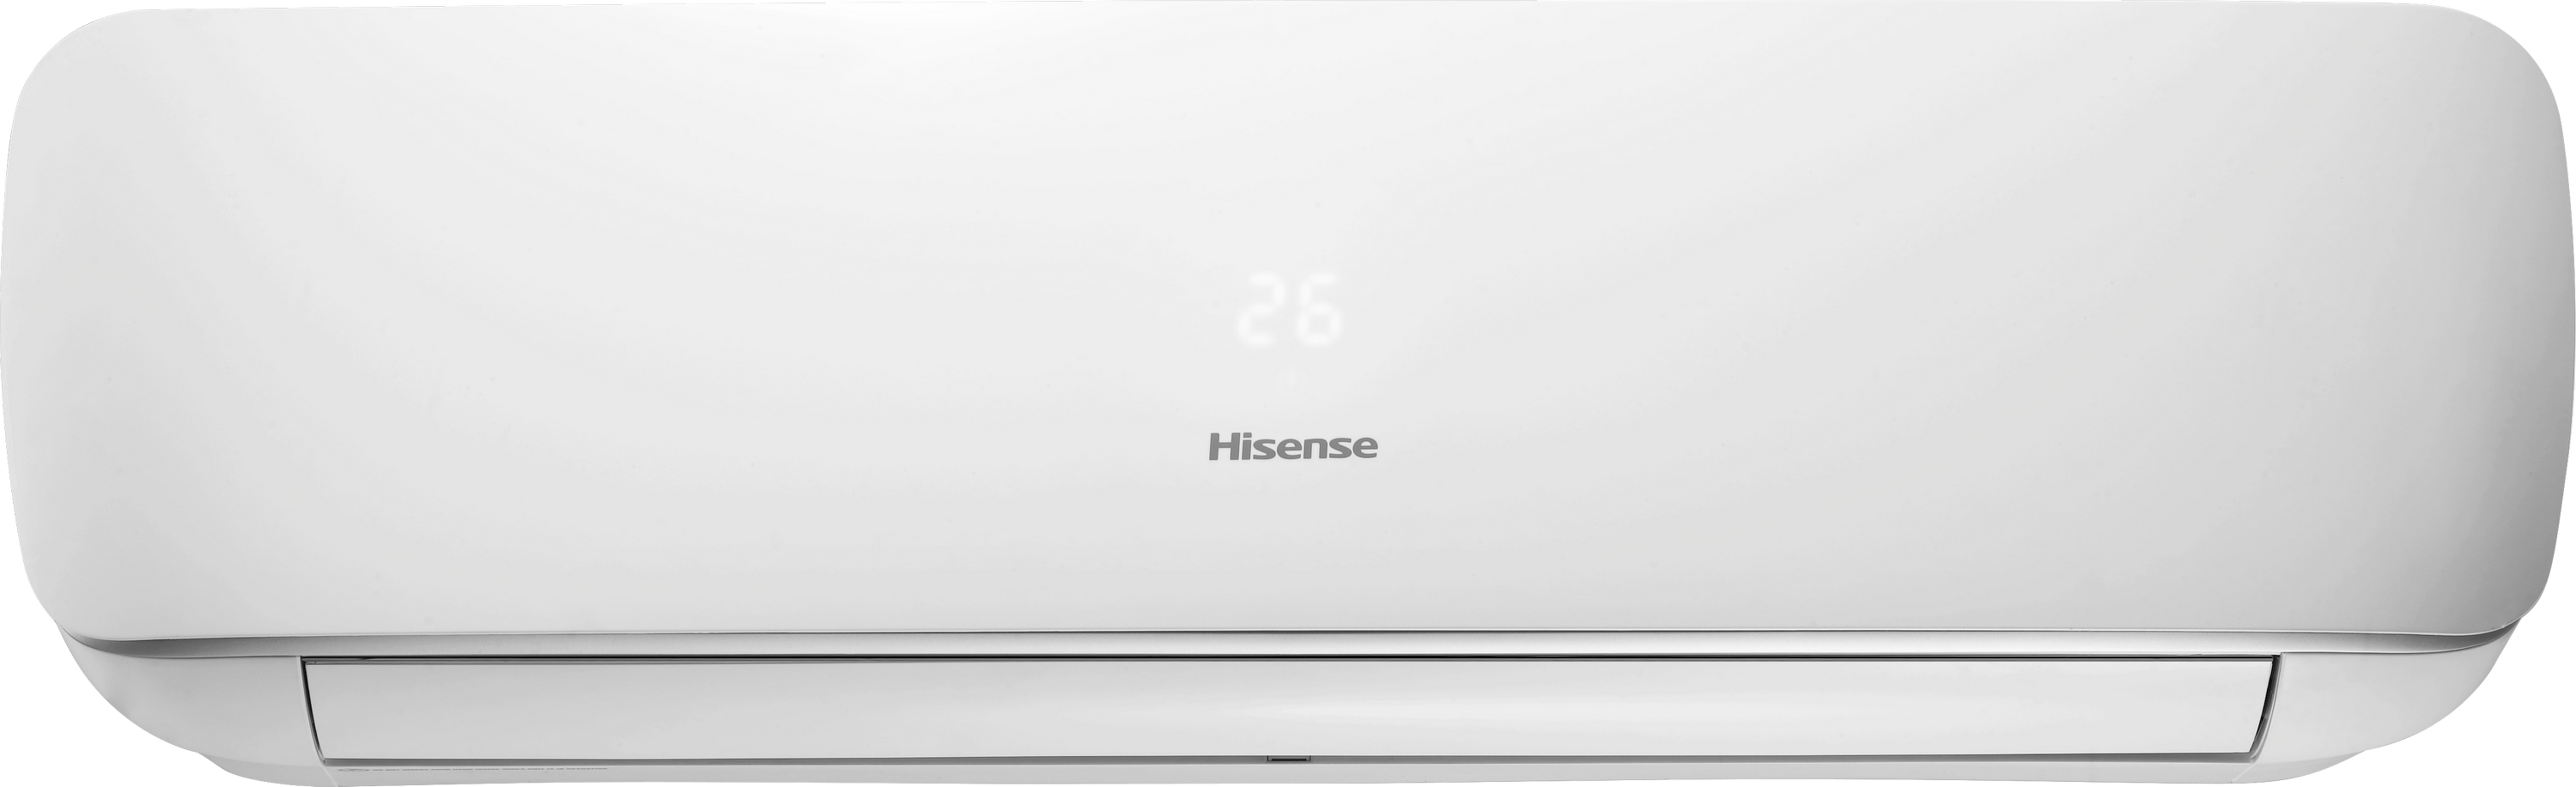 Внутренний блок мультисплит-системы Hisense Apple Pie AST-09UW4SVETG10G цена 0.00 грн - фотография 2